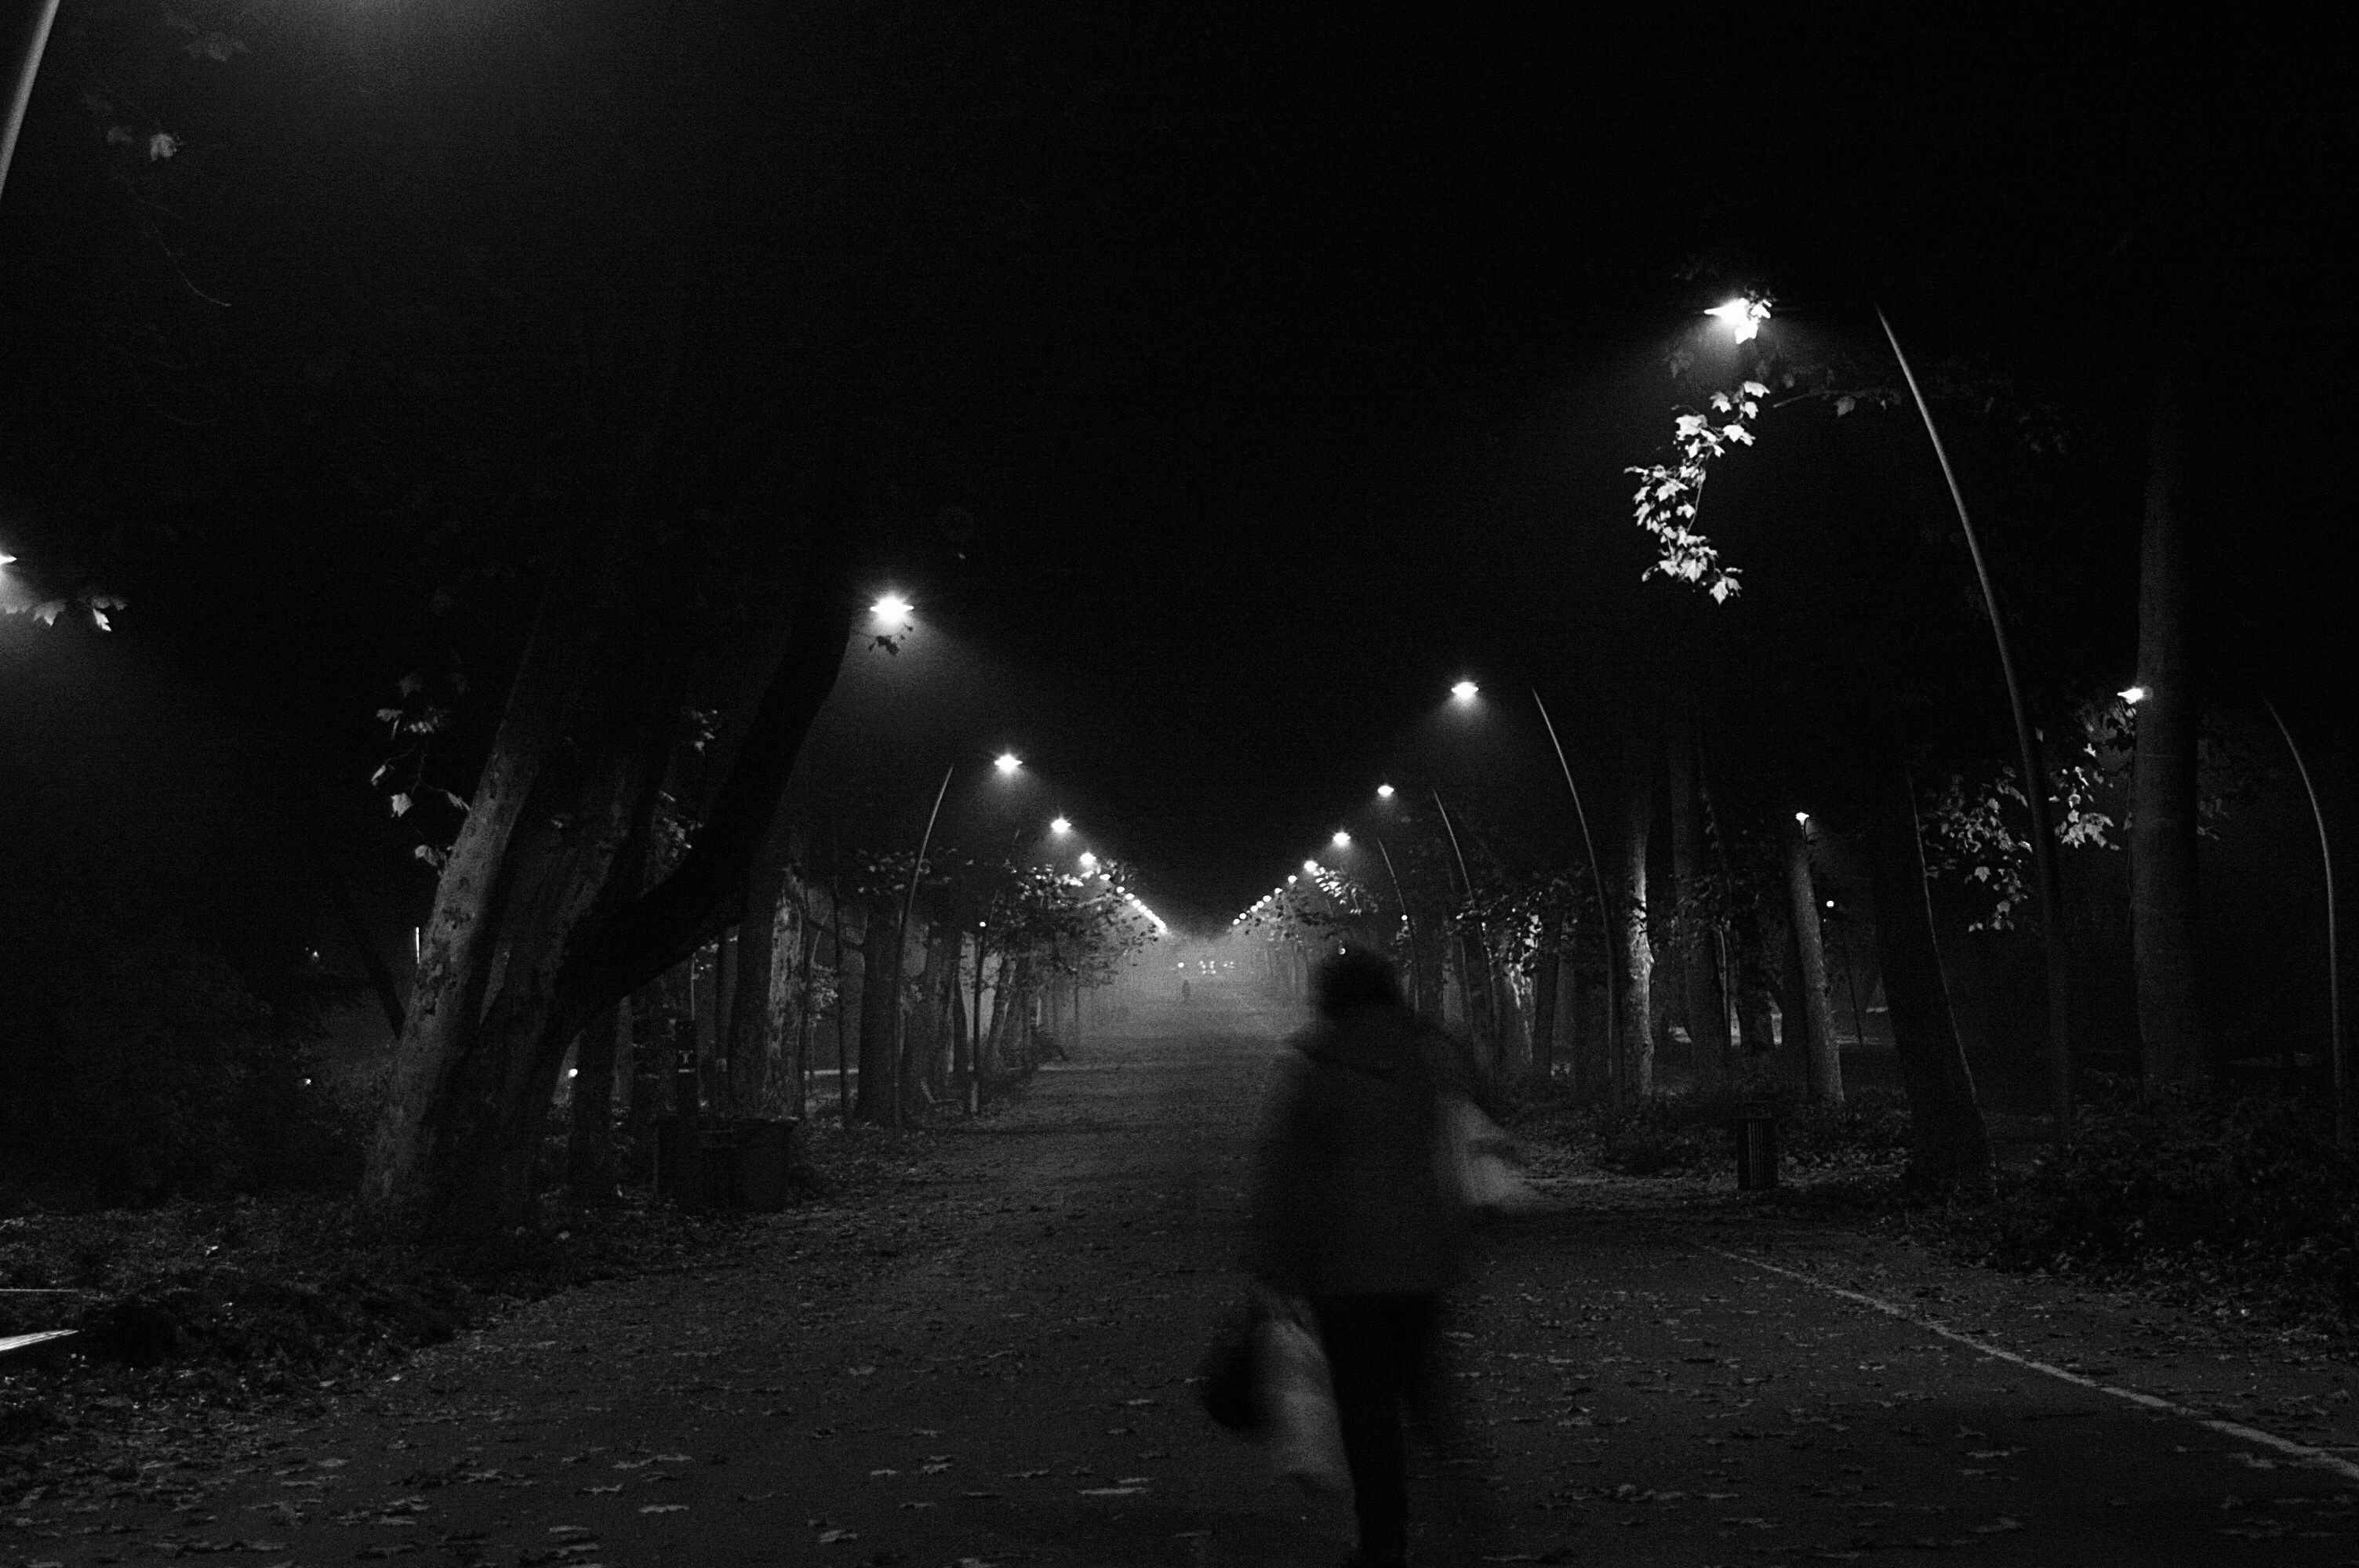 Fekete-fehér fénykép, amin egy alak halad át egy ködös, esti parkon